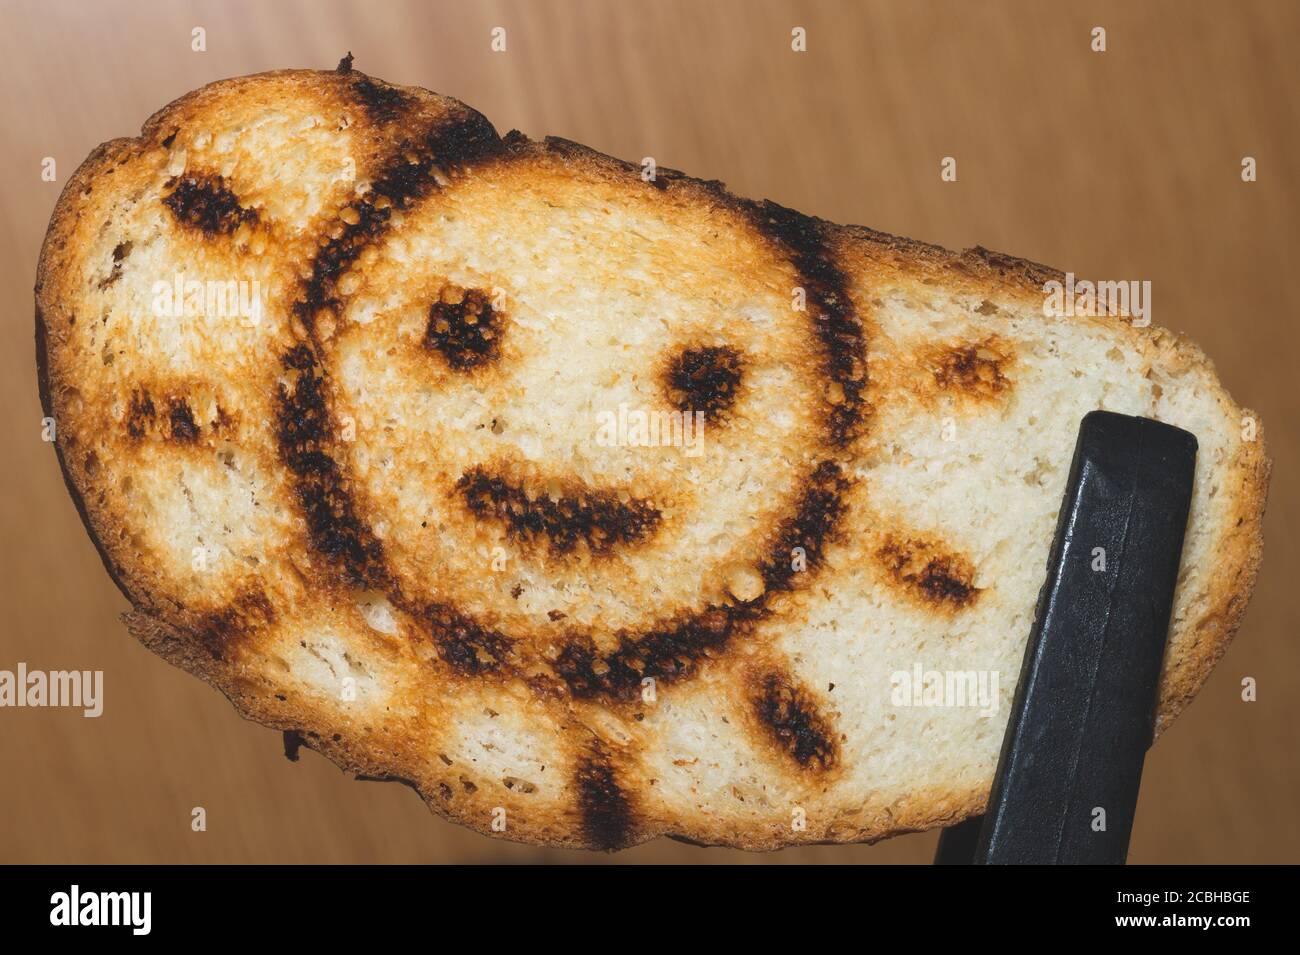 Pane tostato con un'immagine solare sorridente. Simbolo sul pane tostato Foto Stock